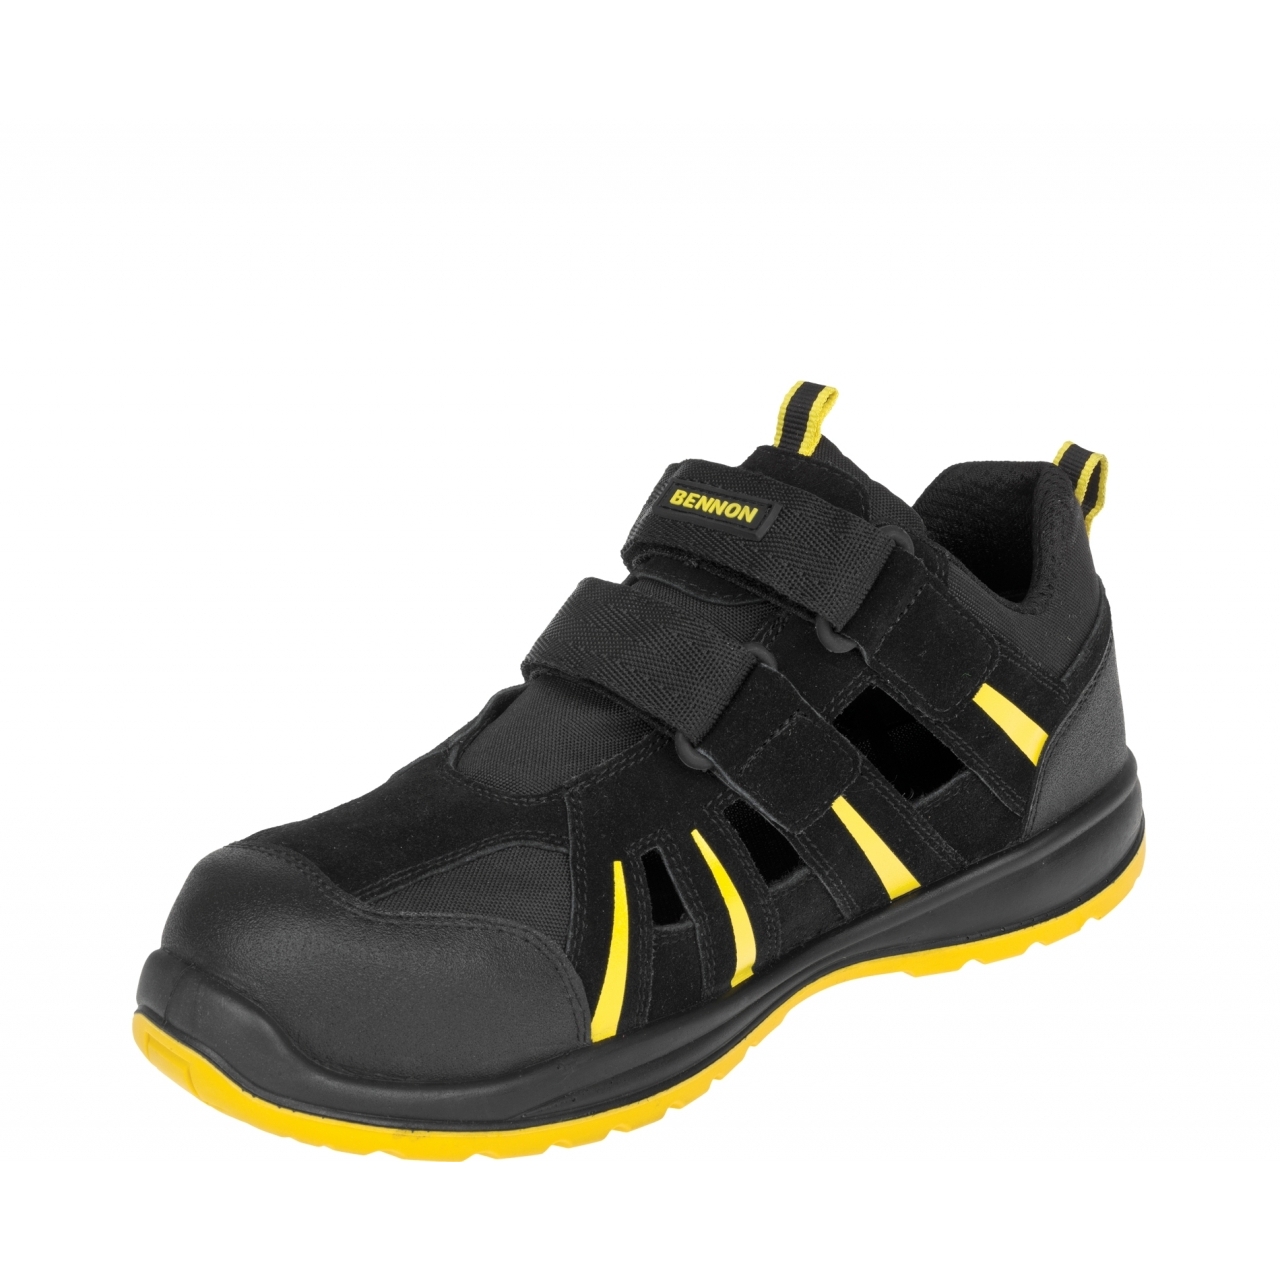 Sandále Bennon Ribbon S1 ESD - černé-žluté, 39